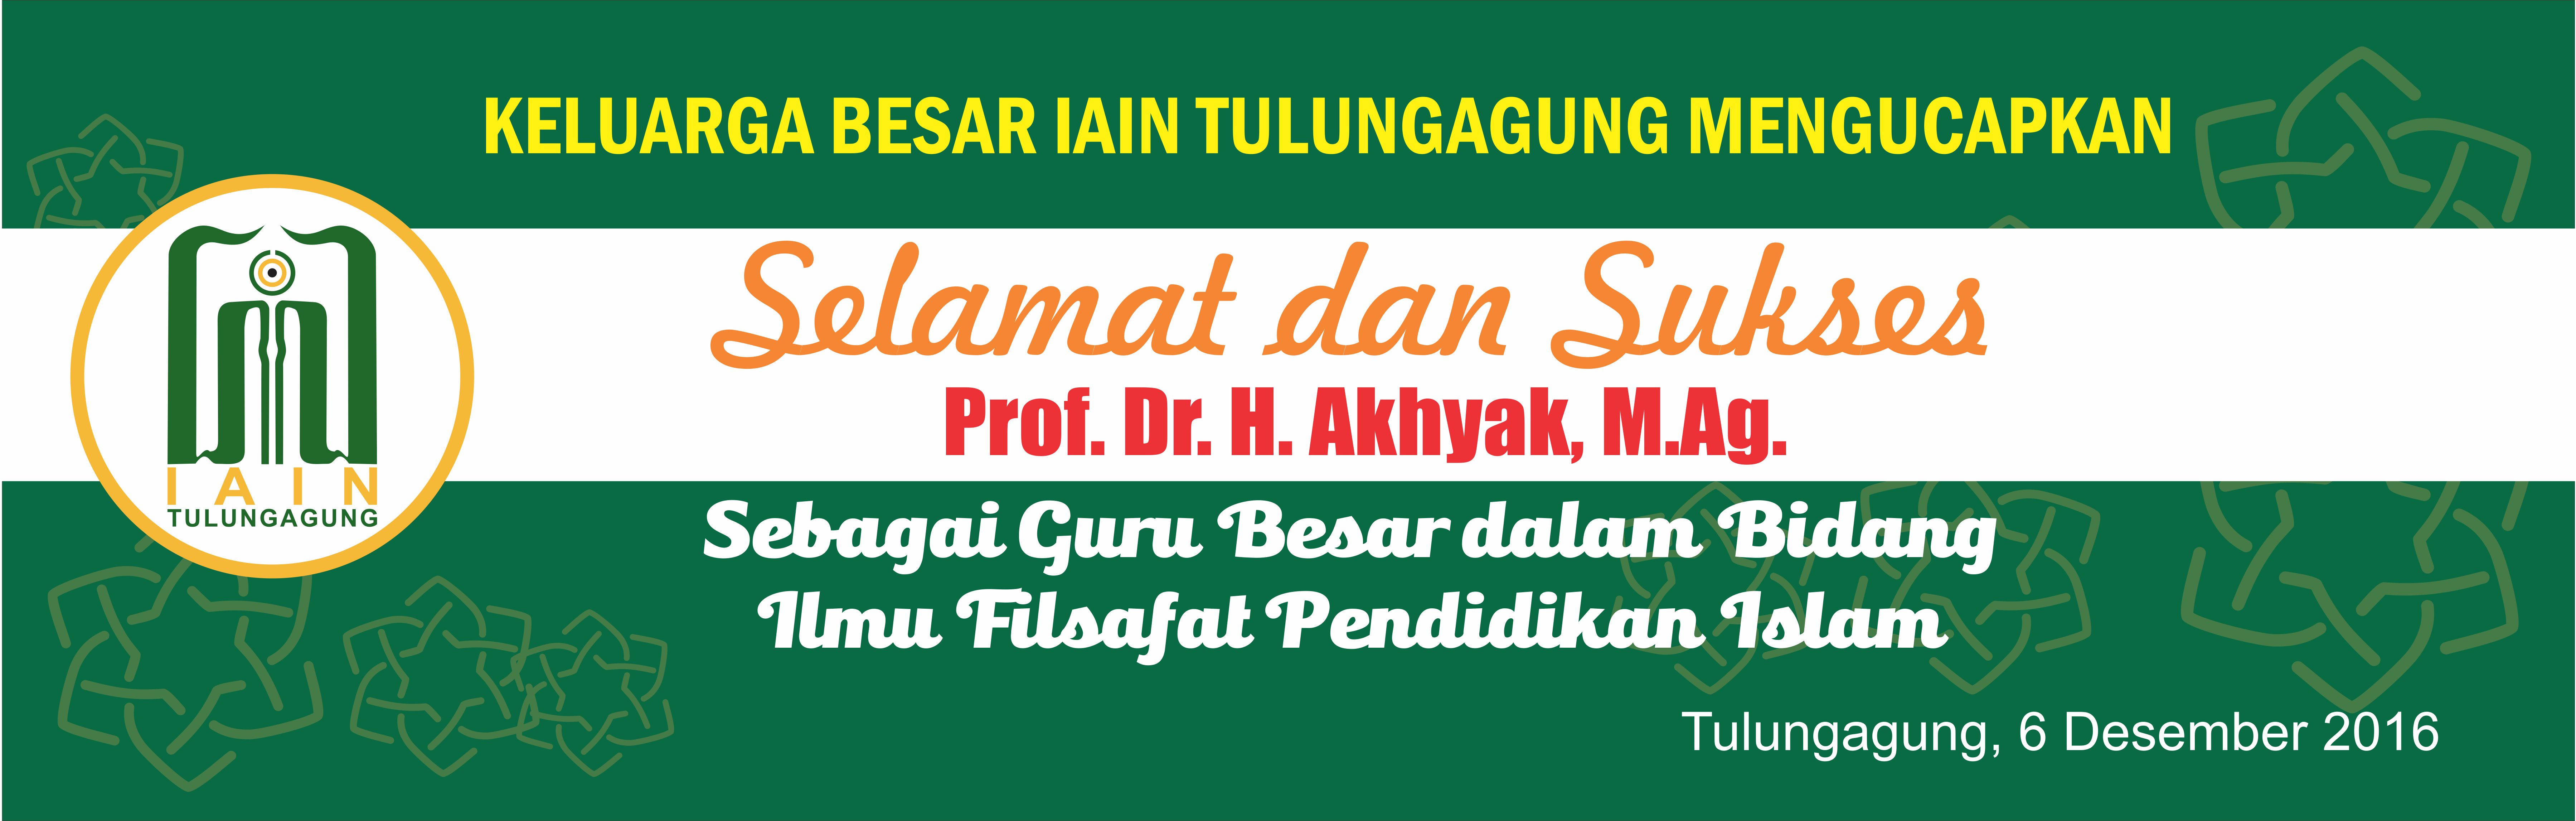 Selamat dan Sukses Pengukuhan Prof. Dr. H. Akhyak, M.Ag. Sebagai Guru Besar